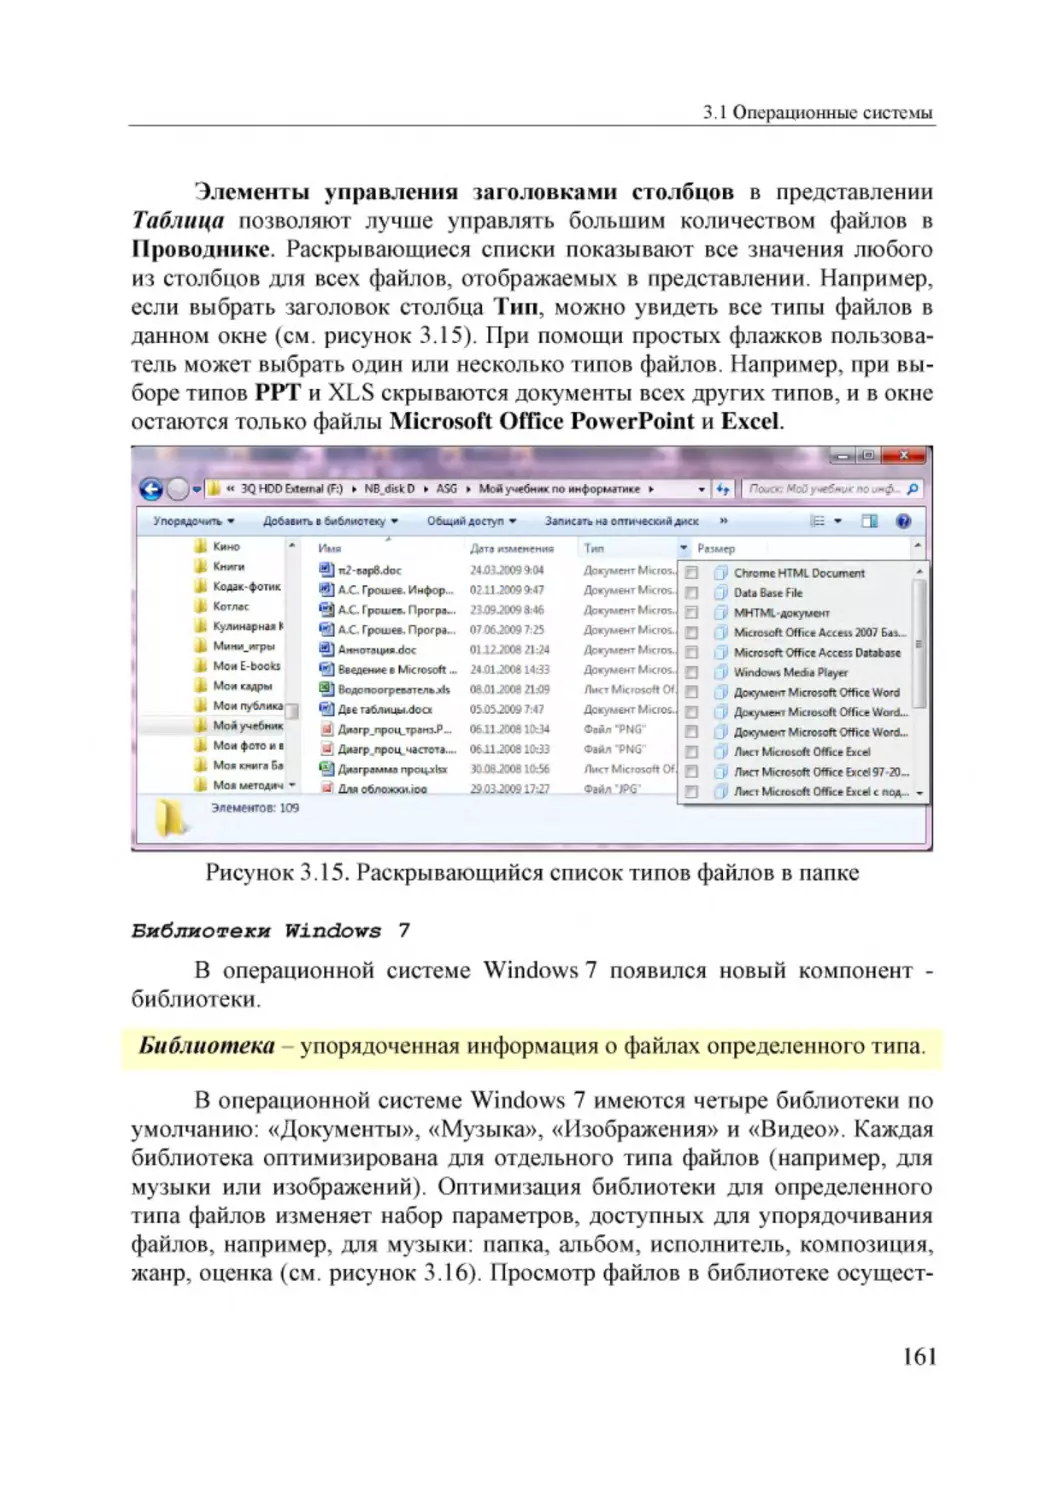 Informatika_Uchebnik_dlya_vuzov_2010 161